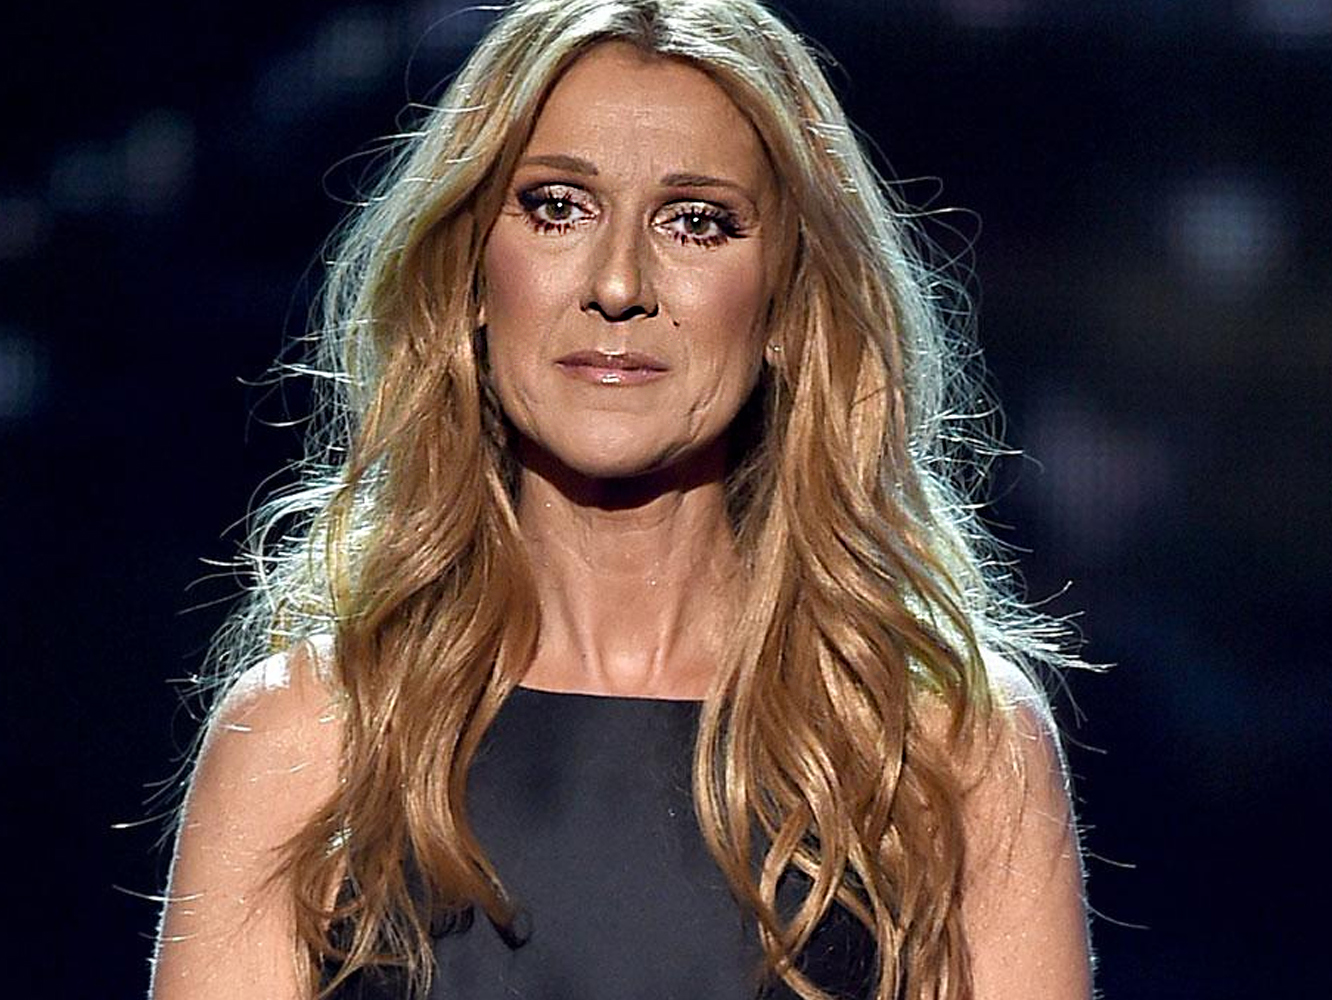  Celine Dion estaba perdiendo audición y cancela su show en Vegas para operarse